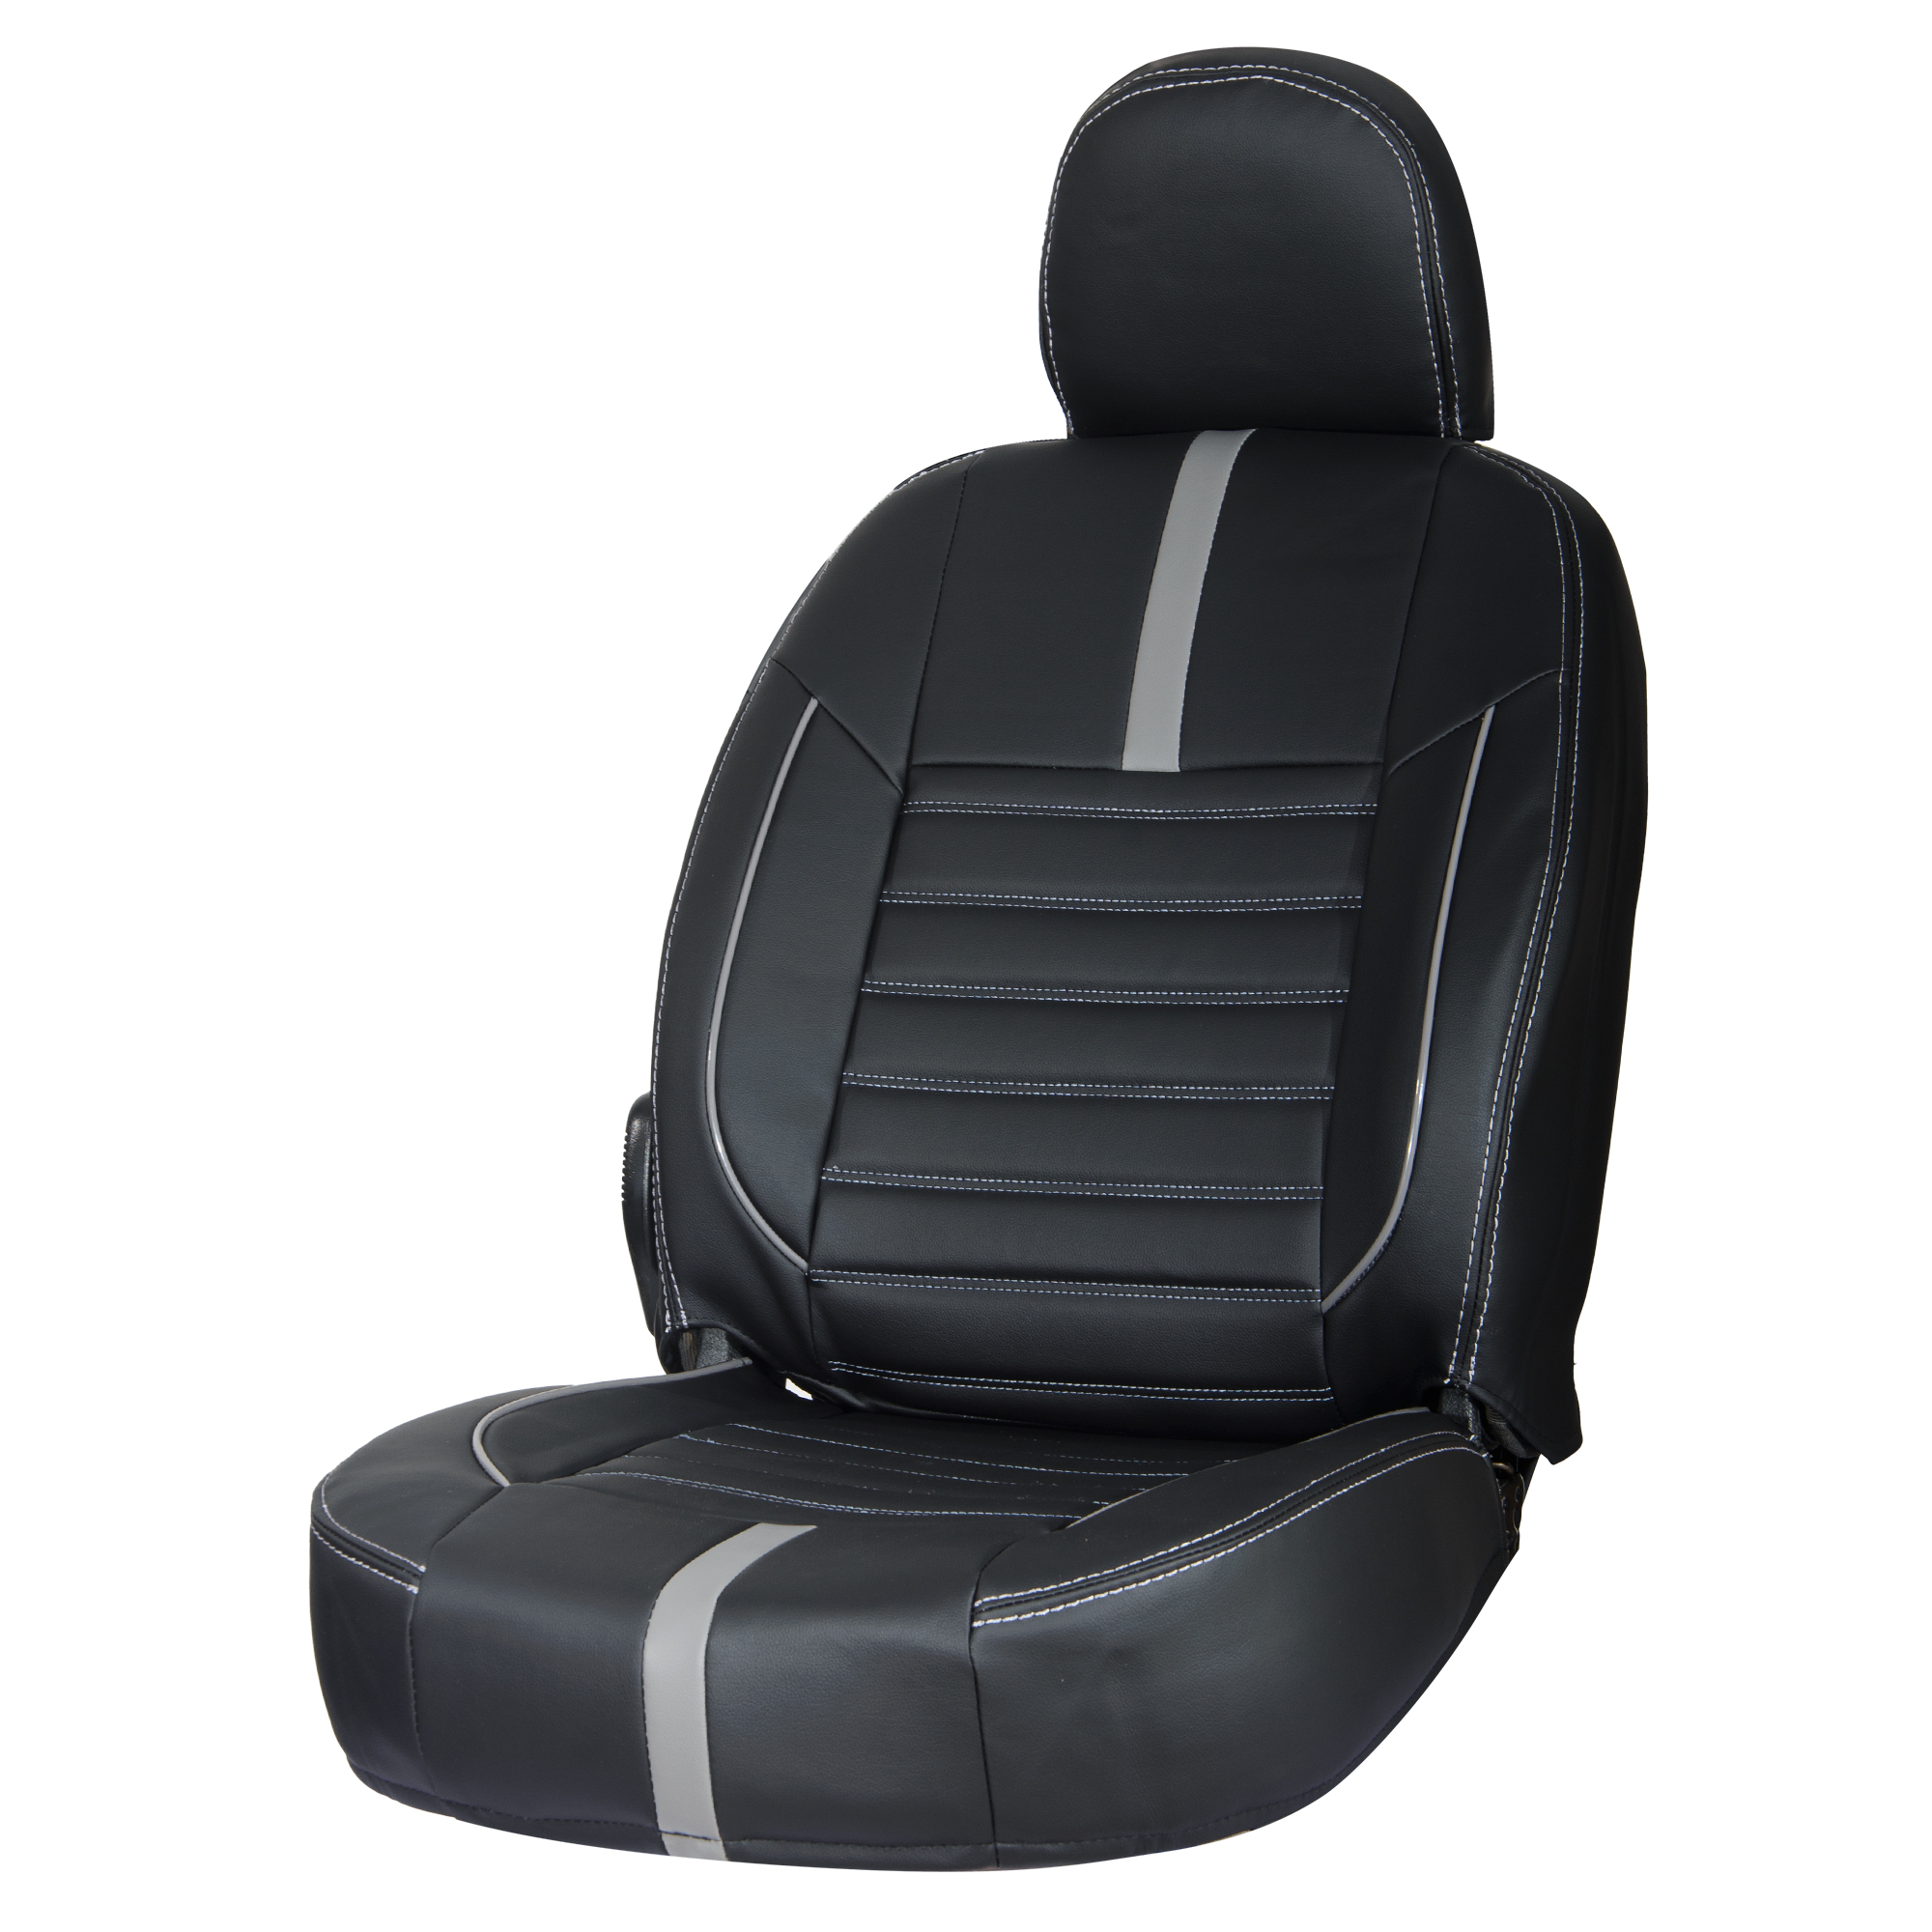 نکته خرید - قیمت روز روکش صندلی خودرو گروه تولیدی پارس روکش رضایی مدل 2023 مناسب برای پژو 207 خرید